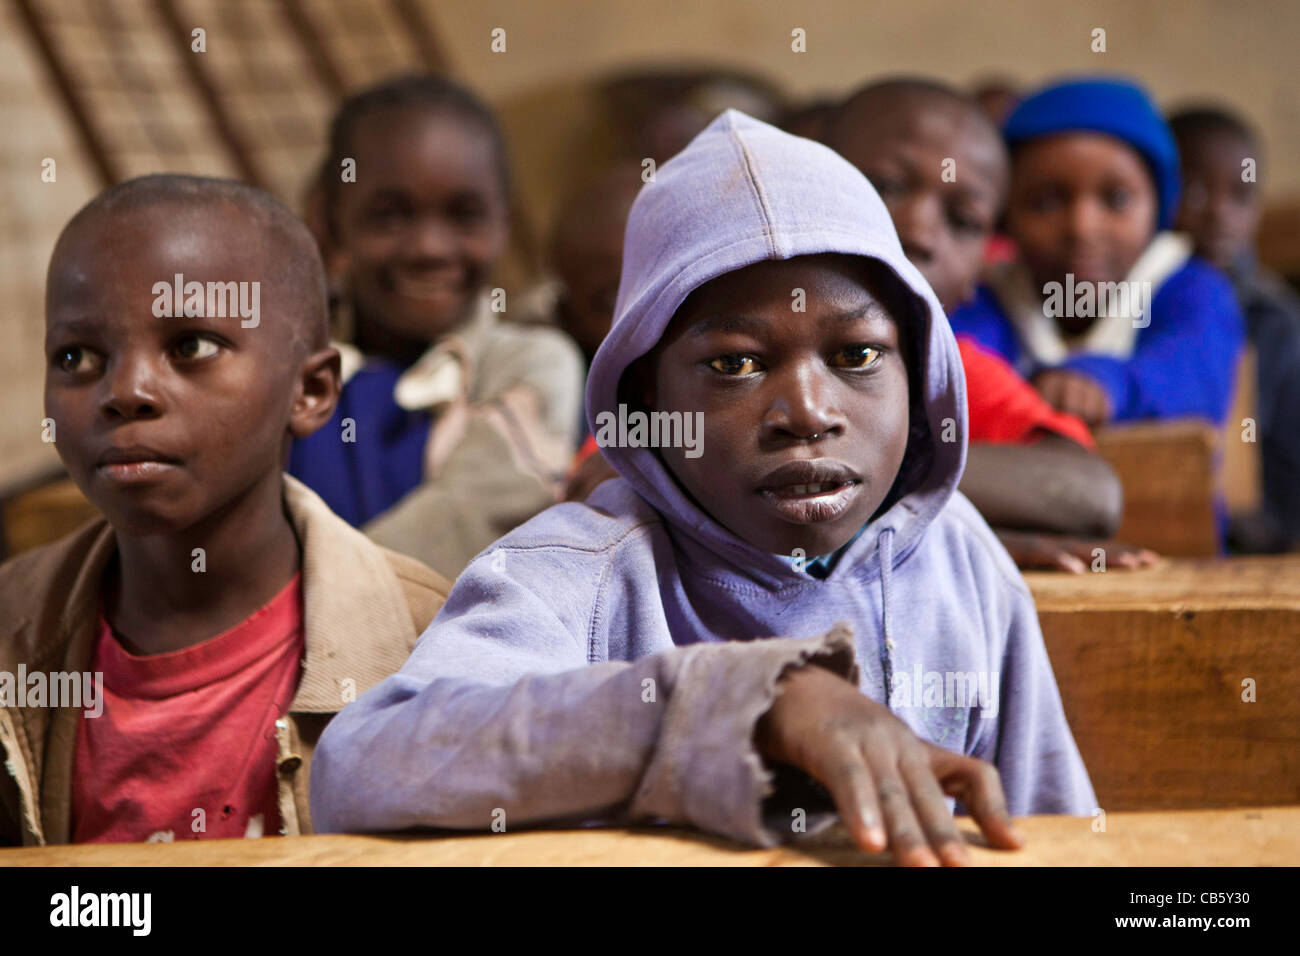 Kinder an ihren Schreibtischen im Klassenzimmer während einer Klasse. Eine NGO betreibt verschiedene Bildungsprogramme, die Schule und die Schülerinnen und Schüler zu helfen. Stockfoto